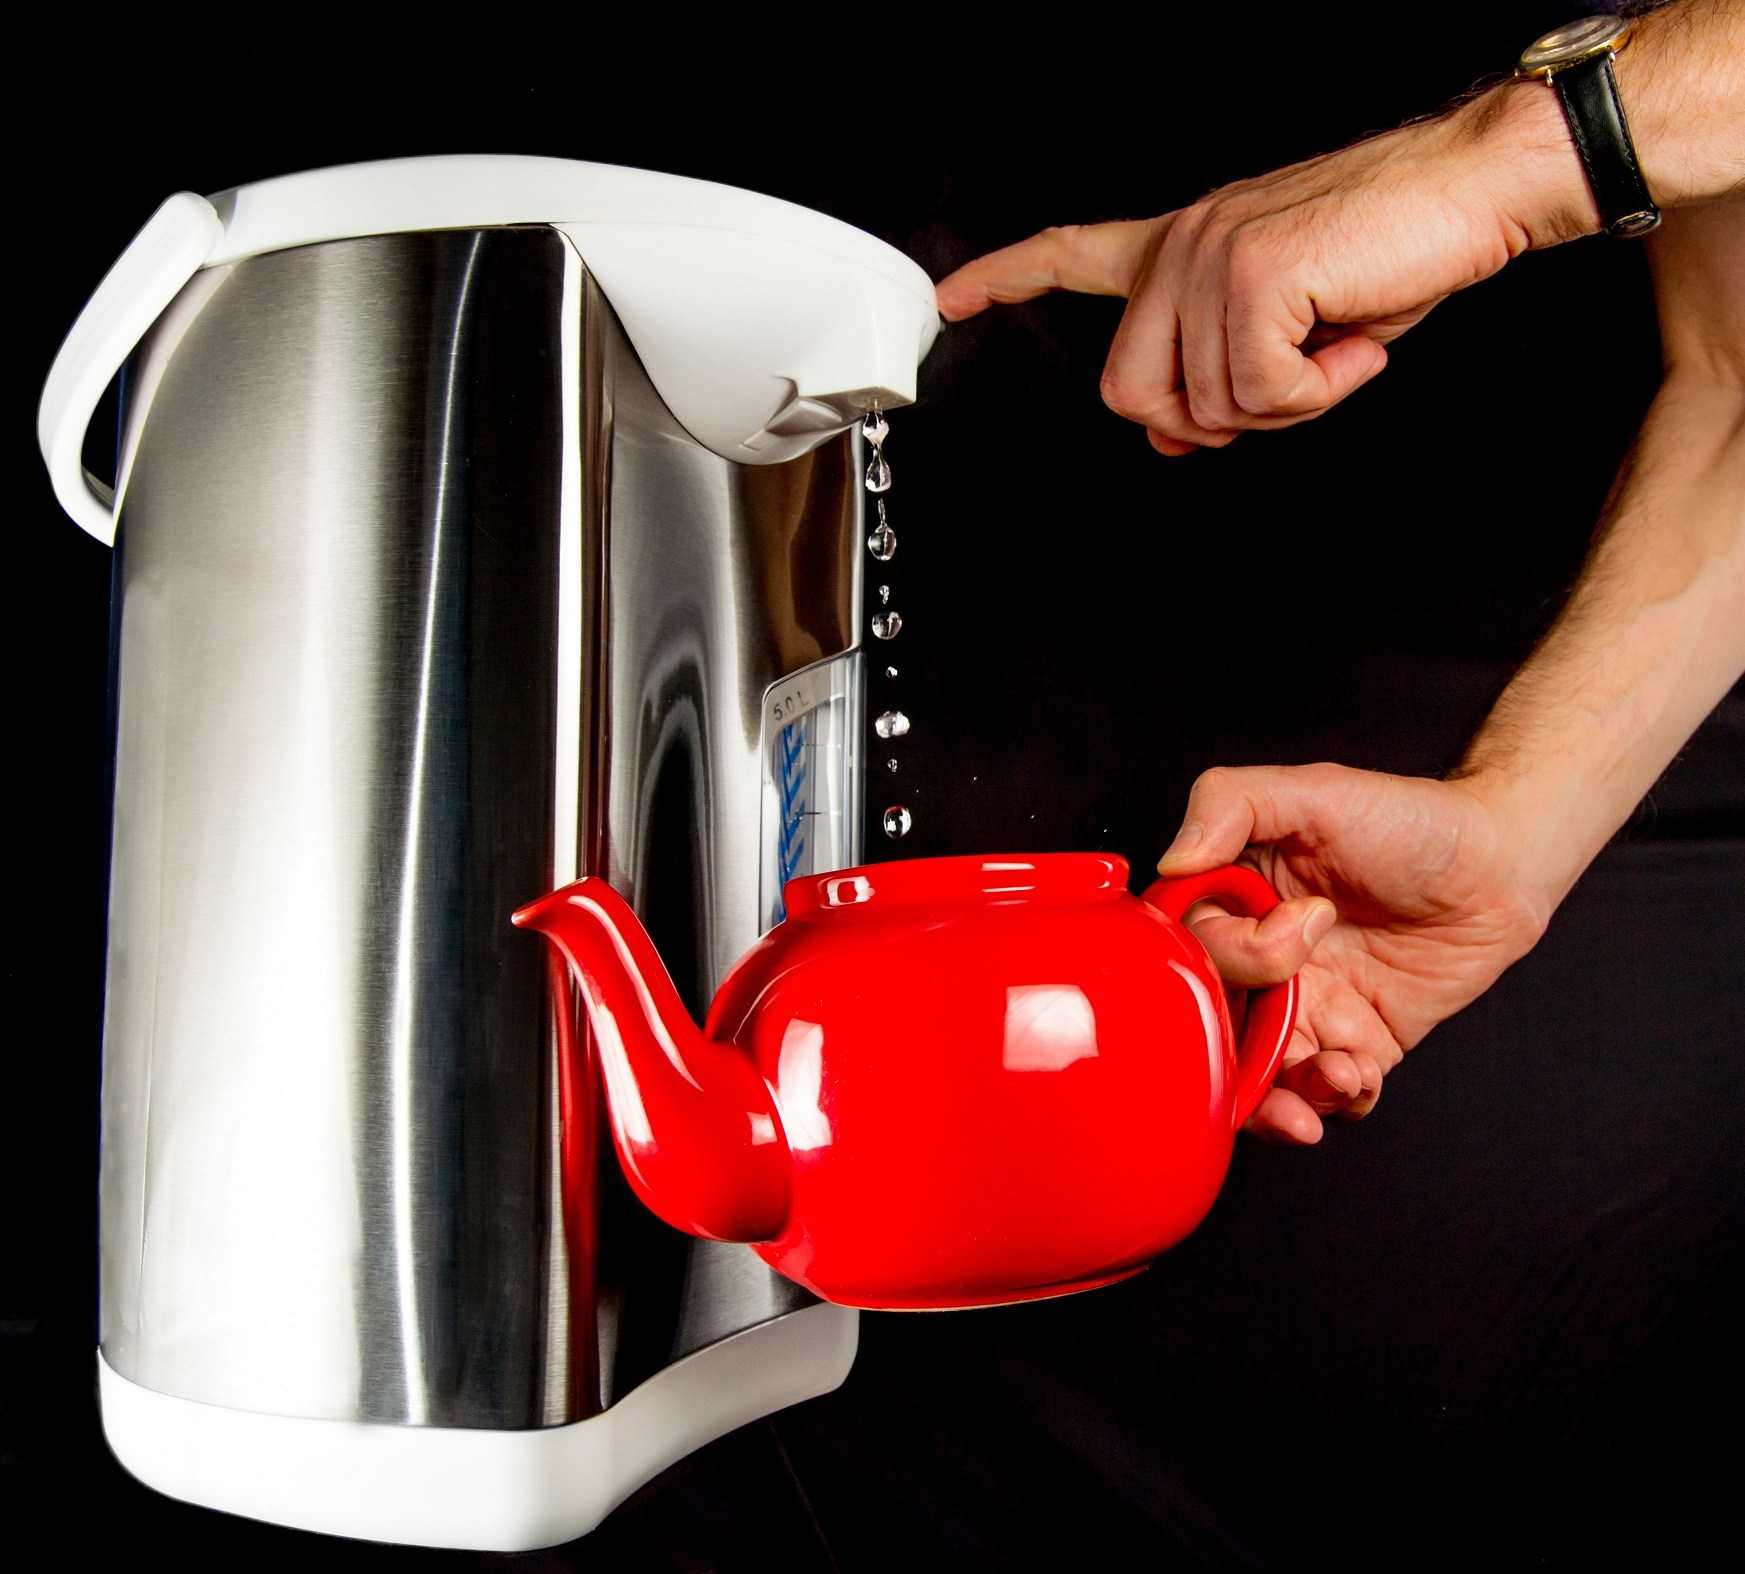 Как правильно выбрать электрический чайник? подробная инструкция для покупателей